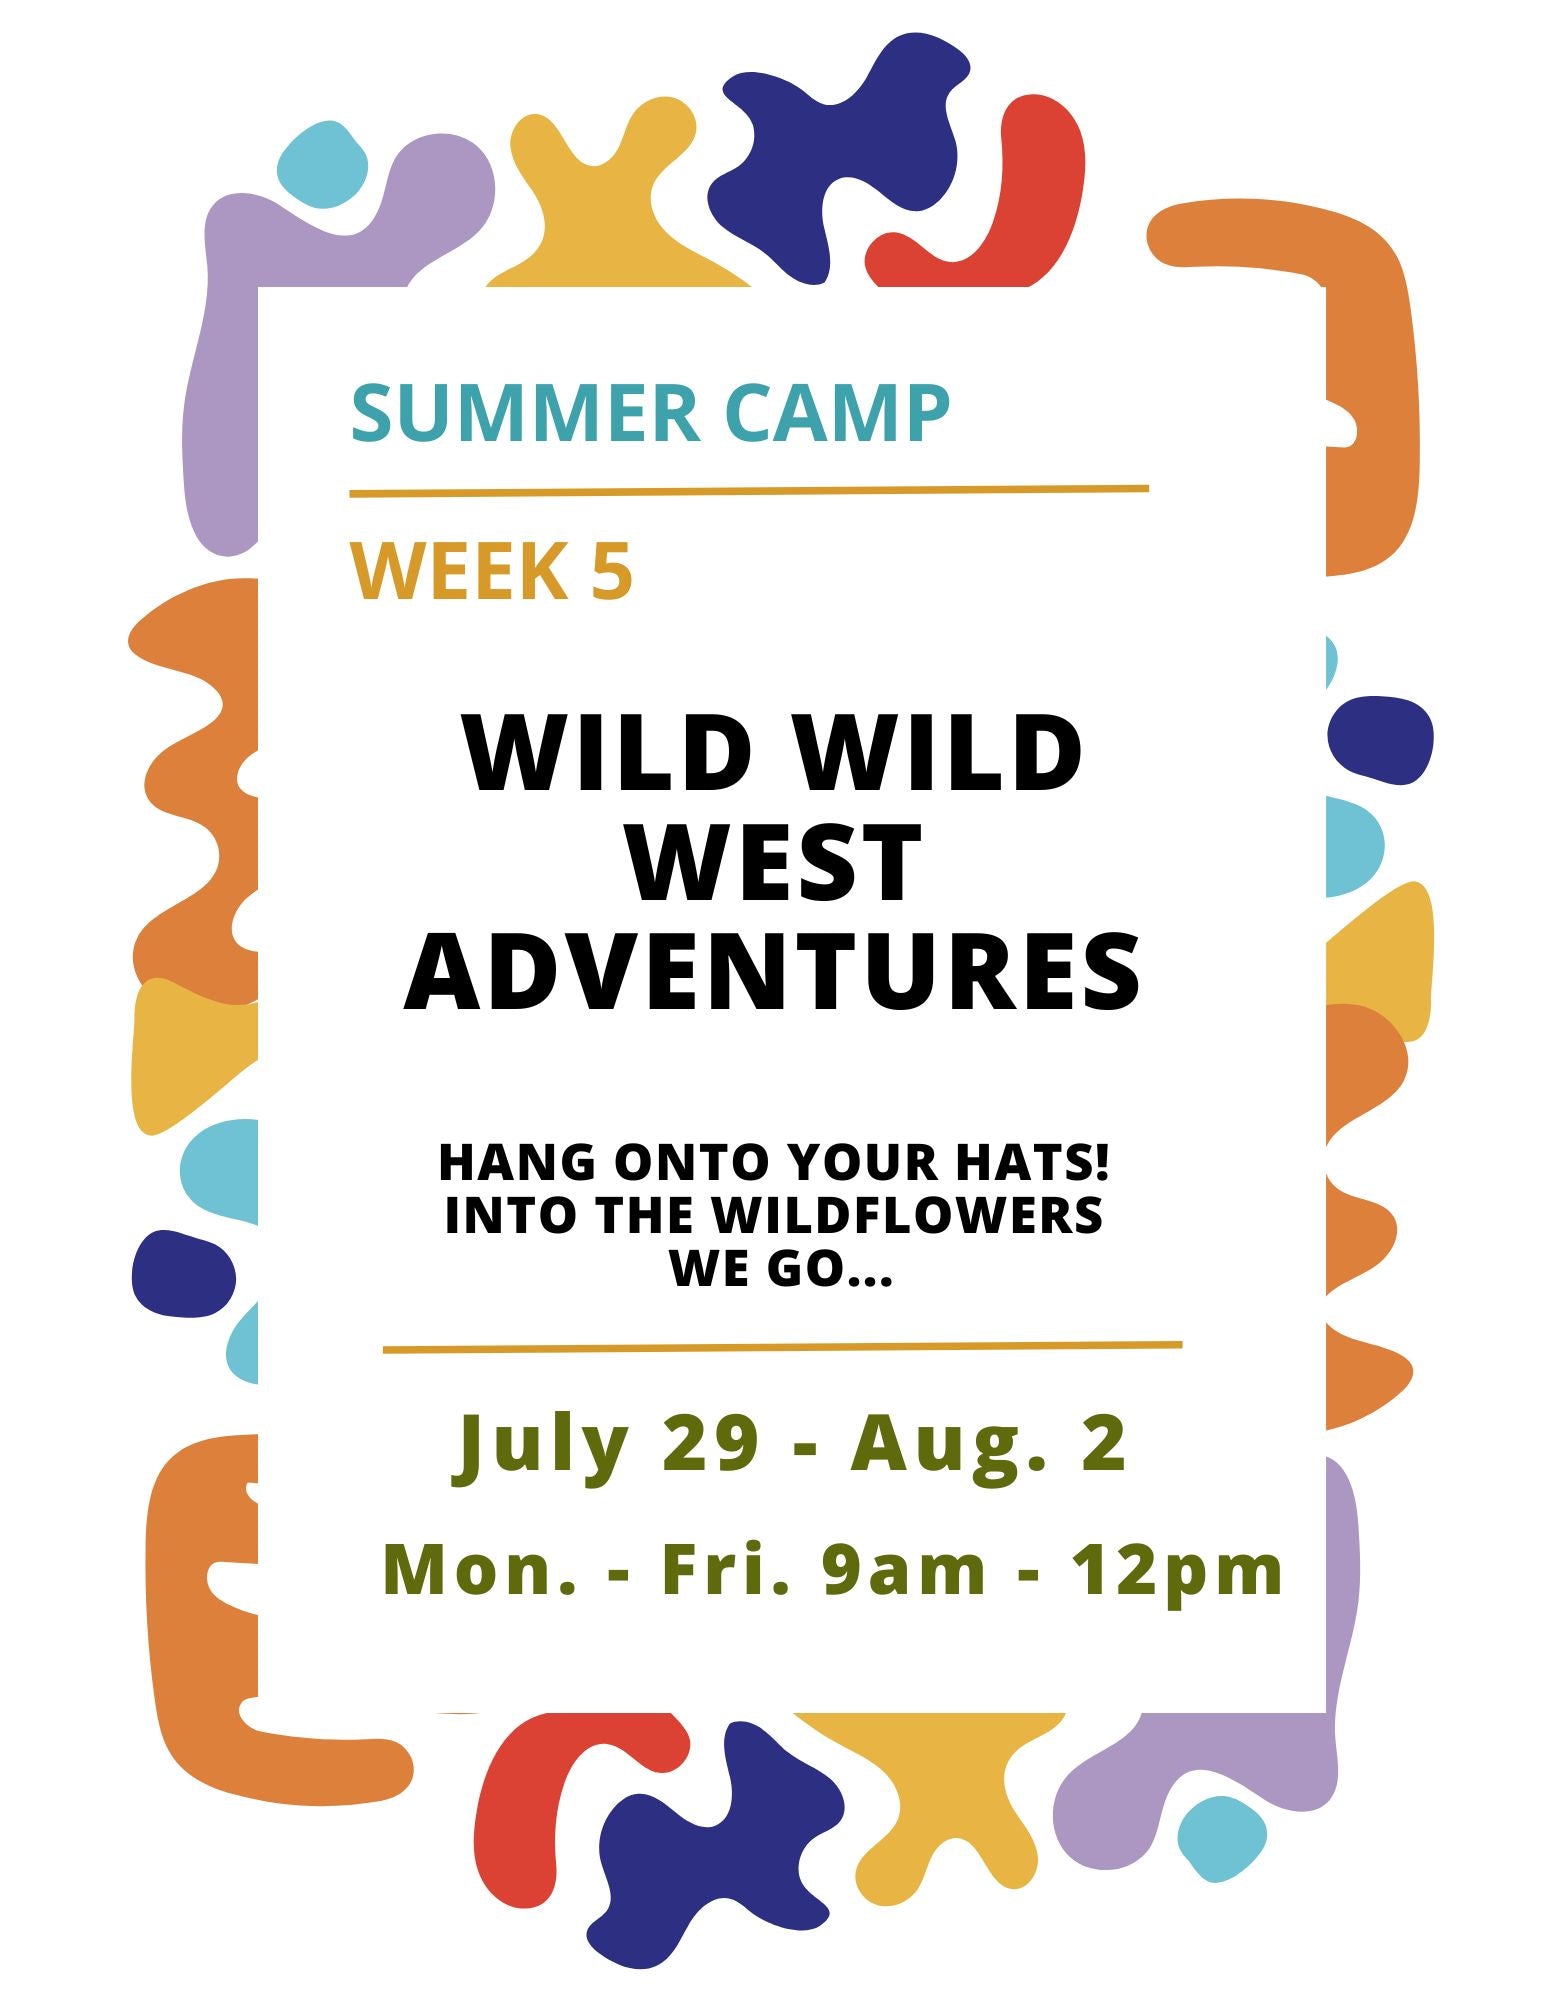 Summer Camp Week 5: Wild Wild West Adventures